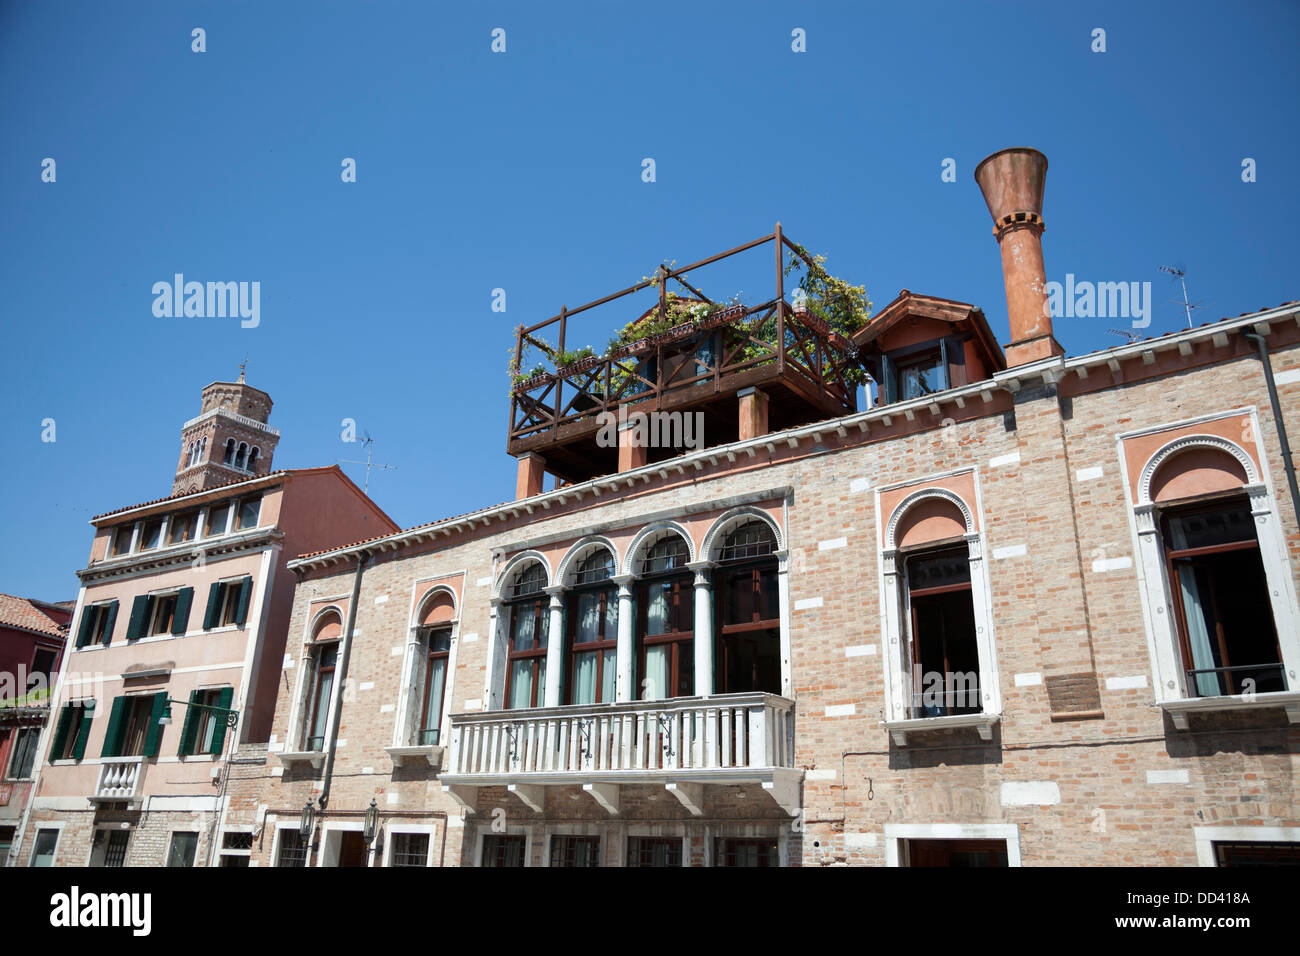 À Venise, un bel exemple d'une altana ou une terrasse en bois construite sur le toit. A Venise, un bel exemple d'Altana ou terrasse en bois. Banque D'Images